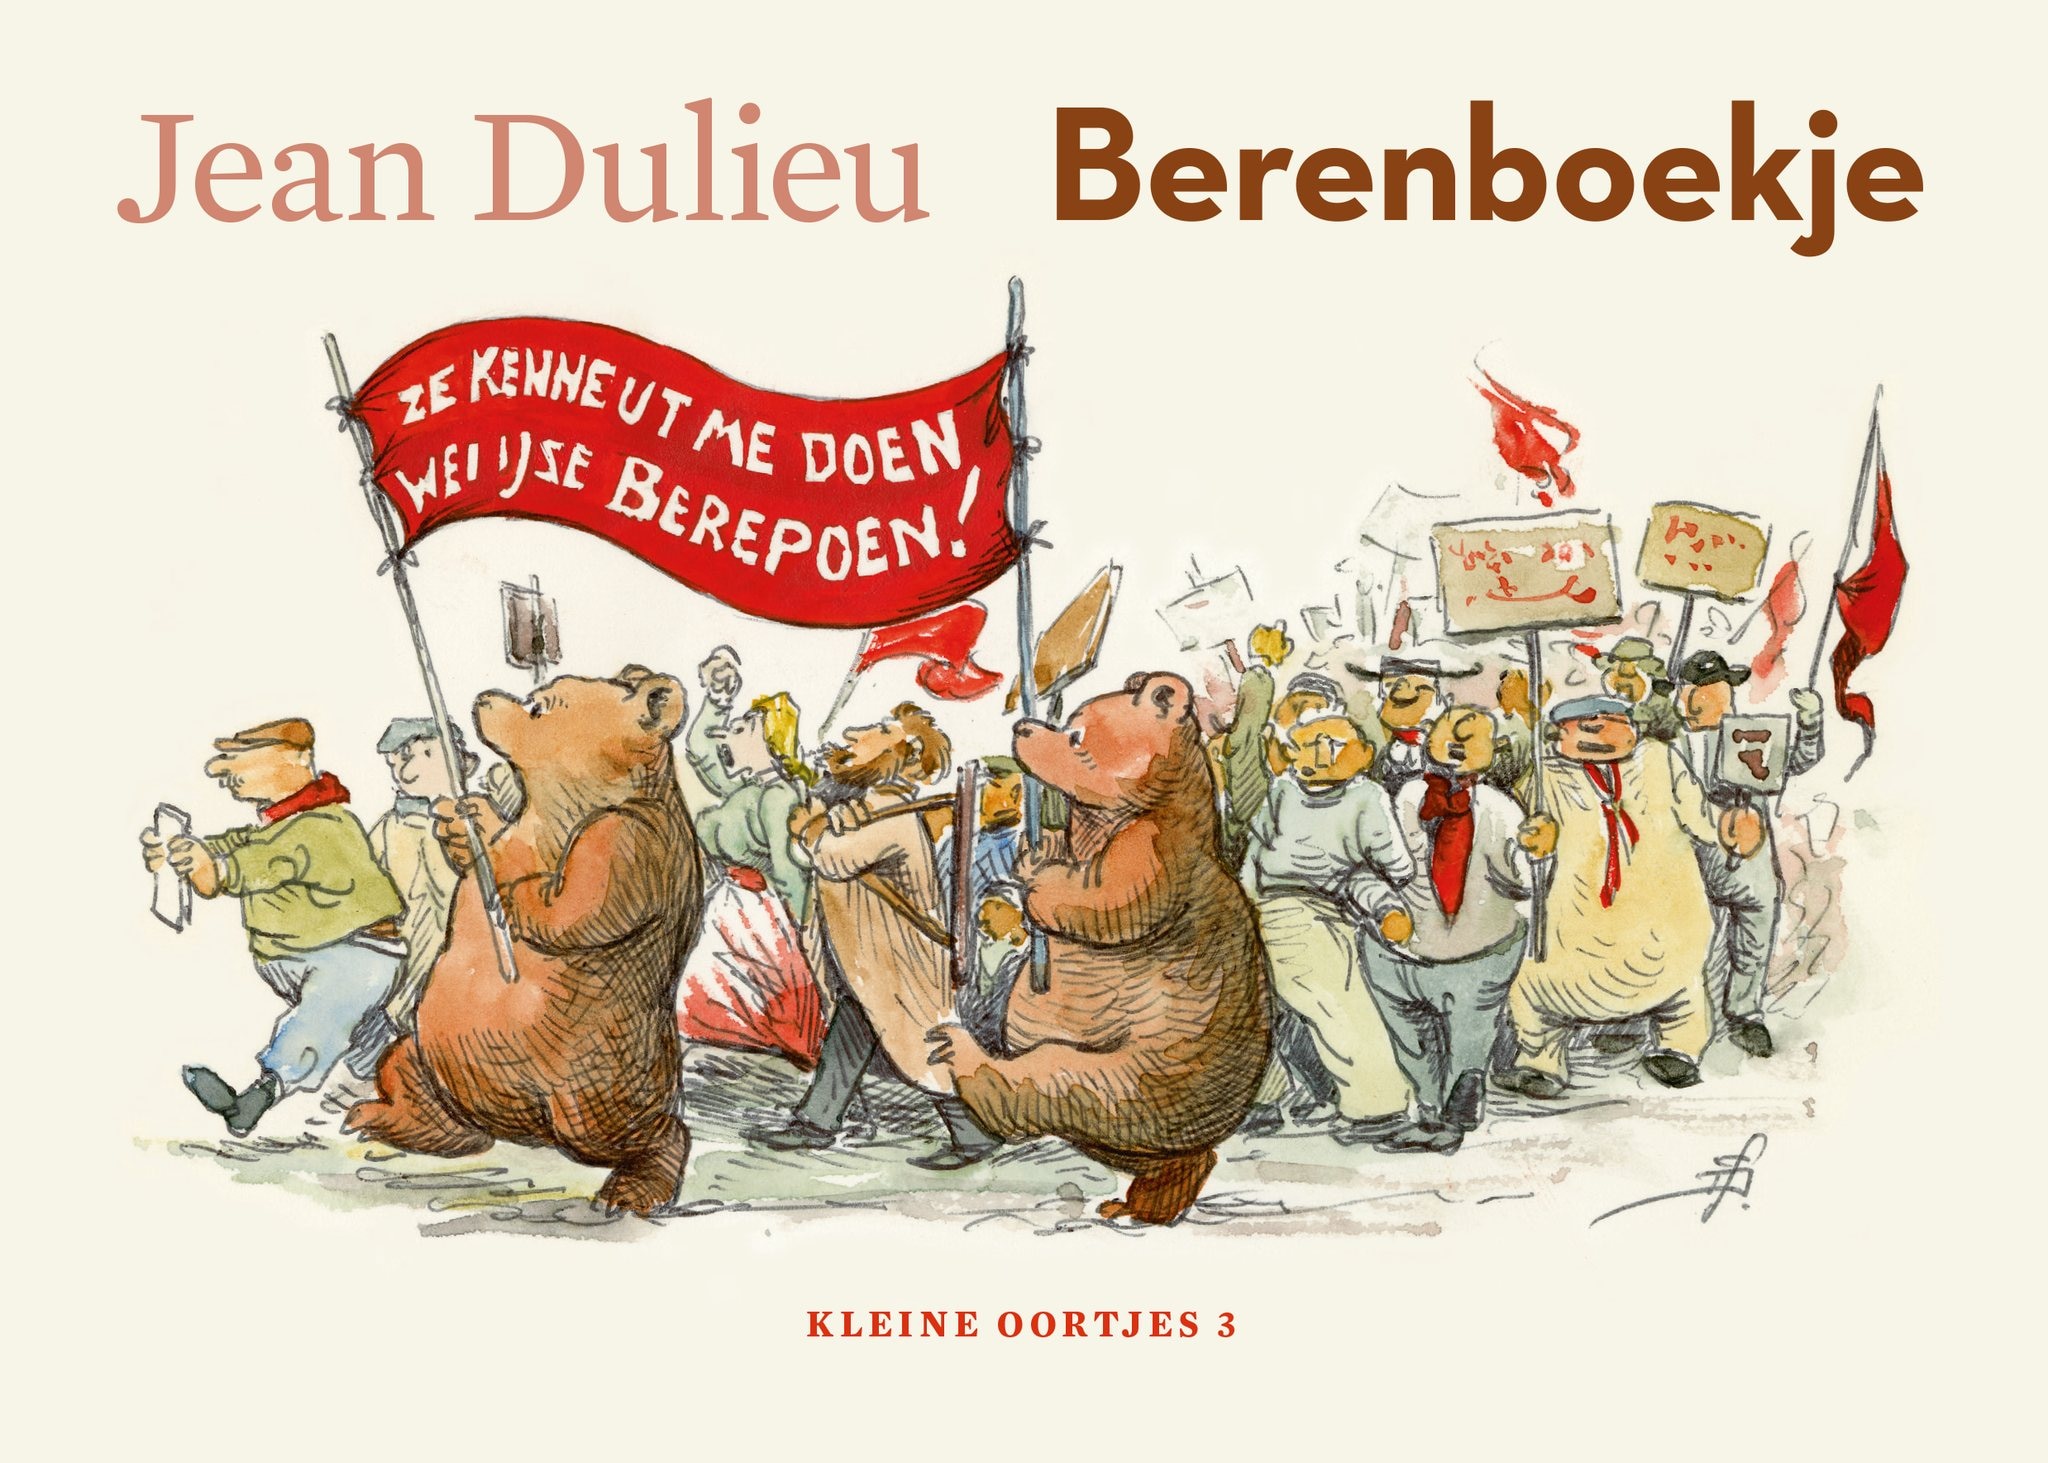 Jean Dulieu, bekend van Paulus de Boskabouter, kon ook goed beren tekenen